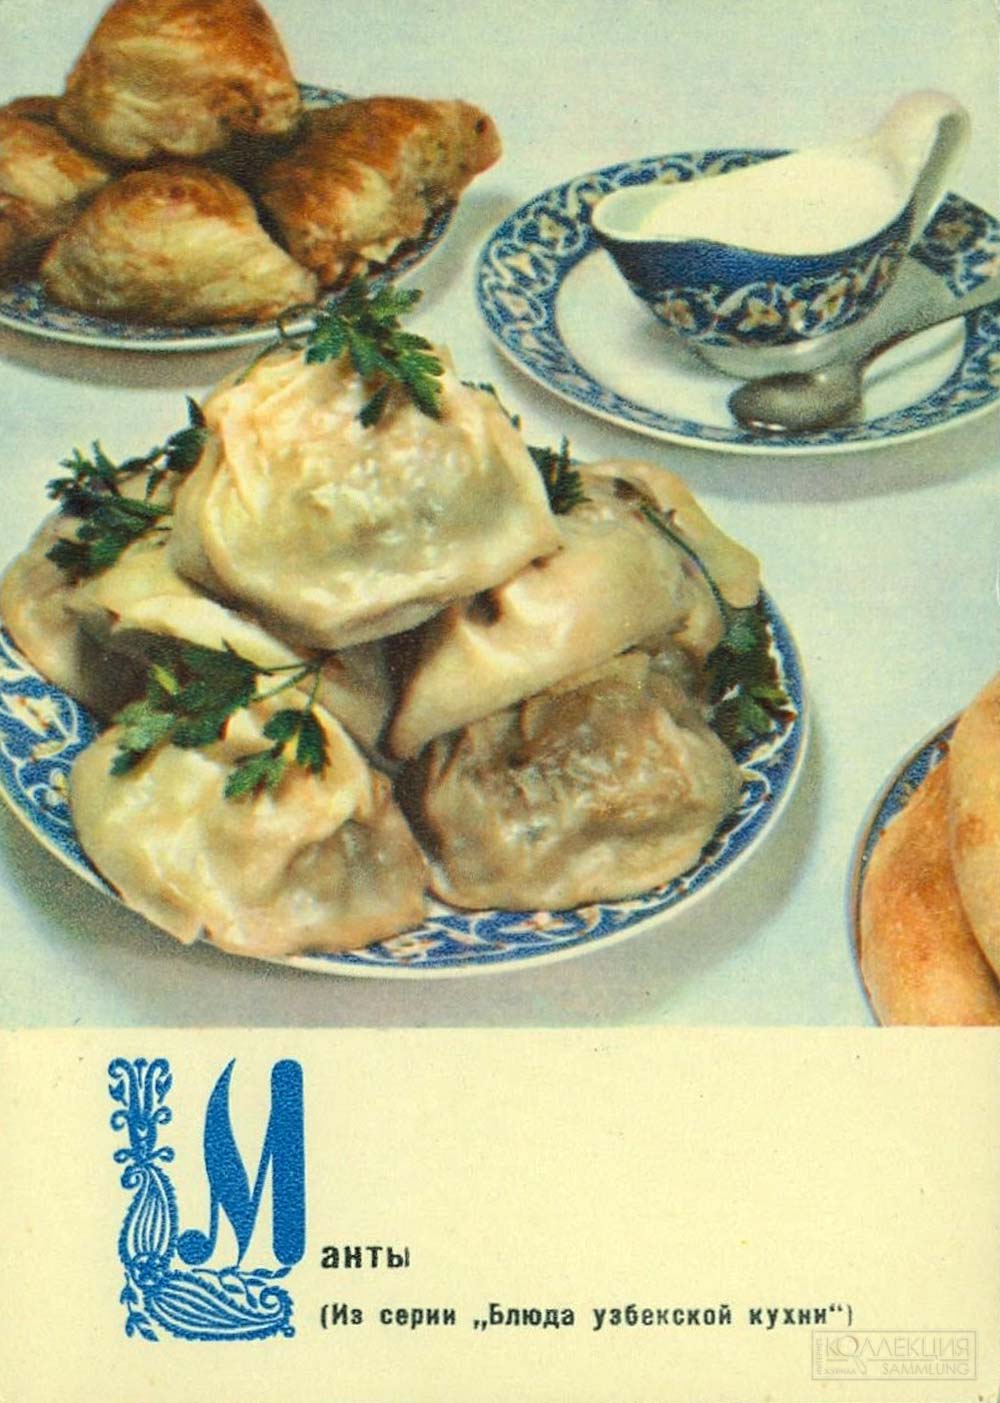 Фото М. Анфингера. Манты (Из серии "Блюда узбекской кухни"). Планета, 1970